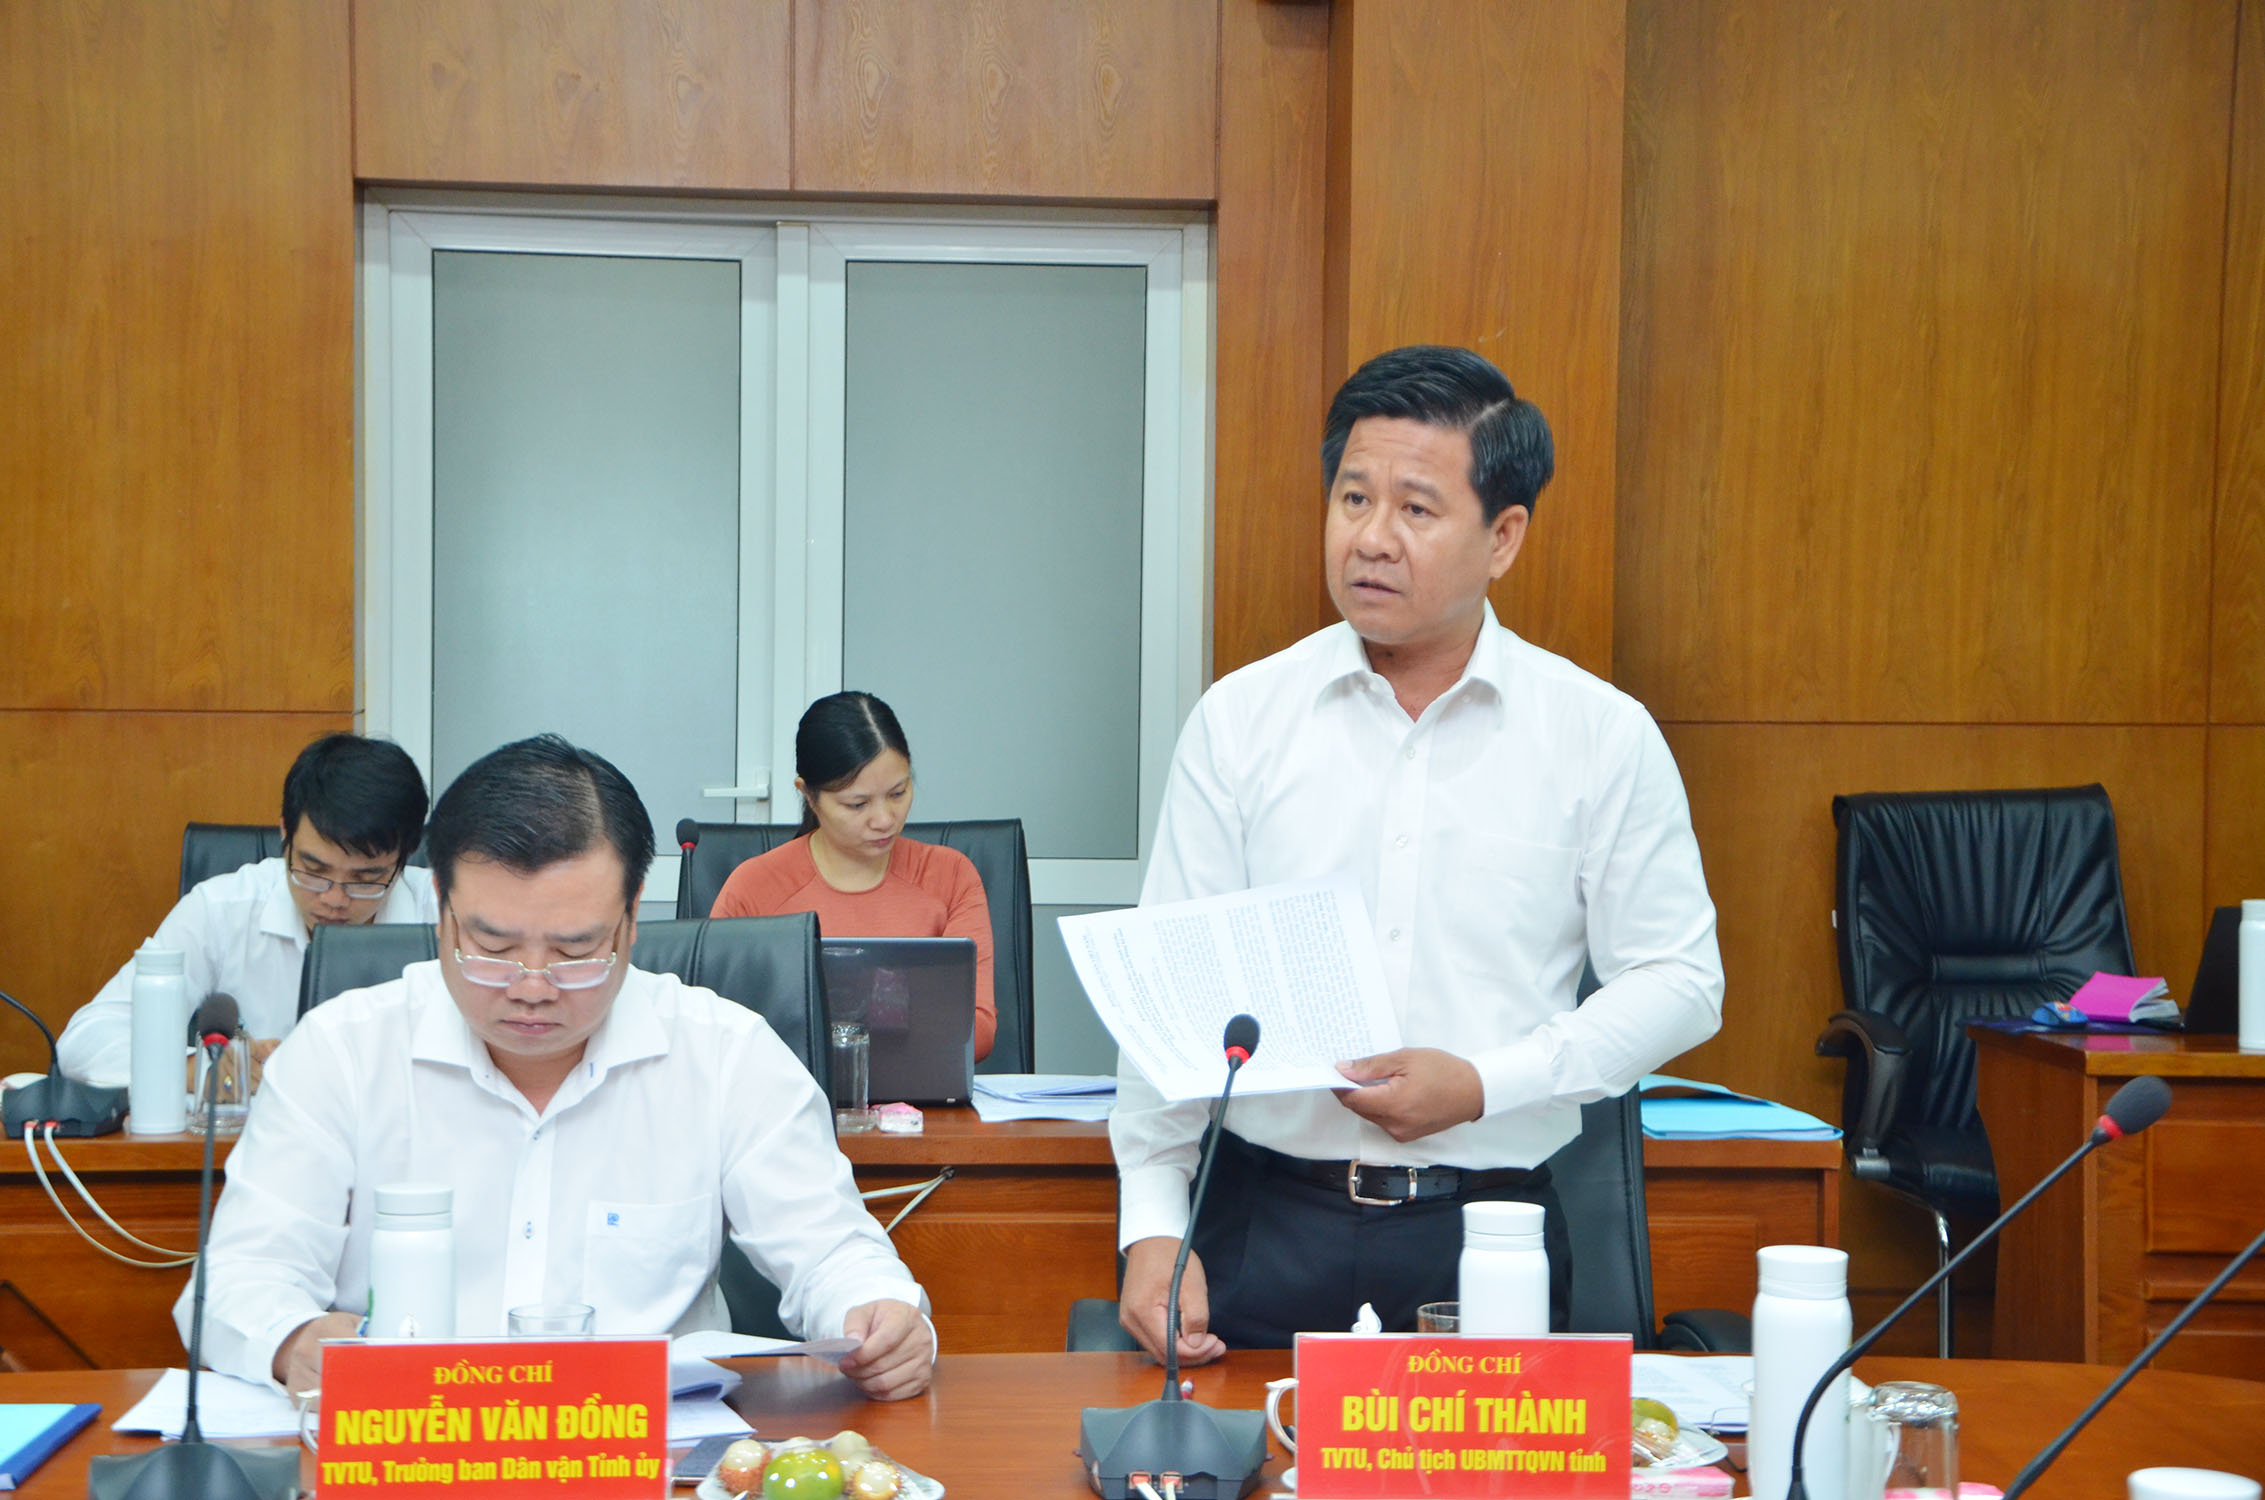 Ông Bùi Chí Thành, Ủy viên Dự khuyết Trung ương Đảng, Ủy viên Ban Thường vụ Tỉnh ủy, Chủ tịch UBMTTQVN phát biểu tại cuộc họp.